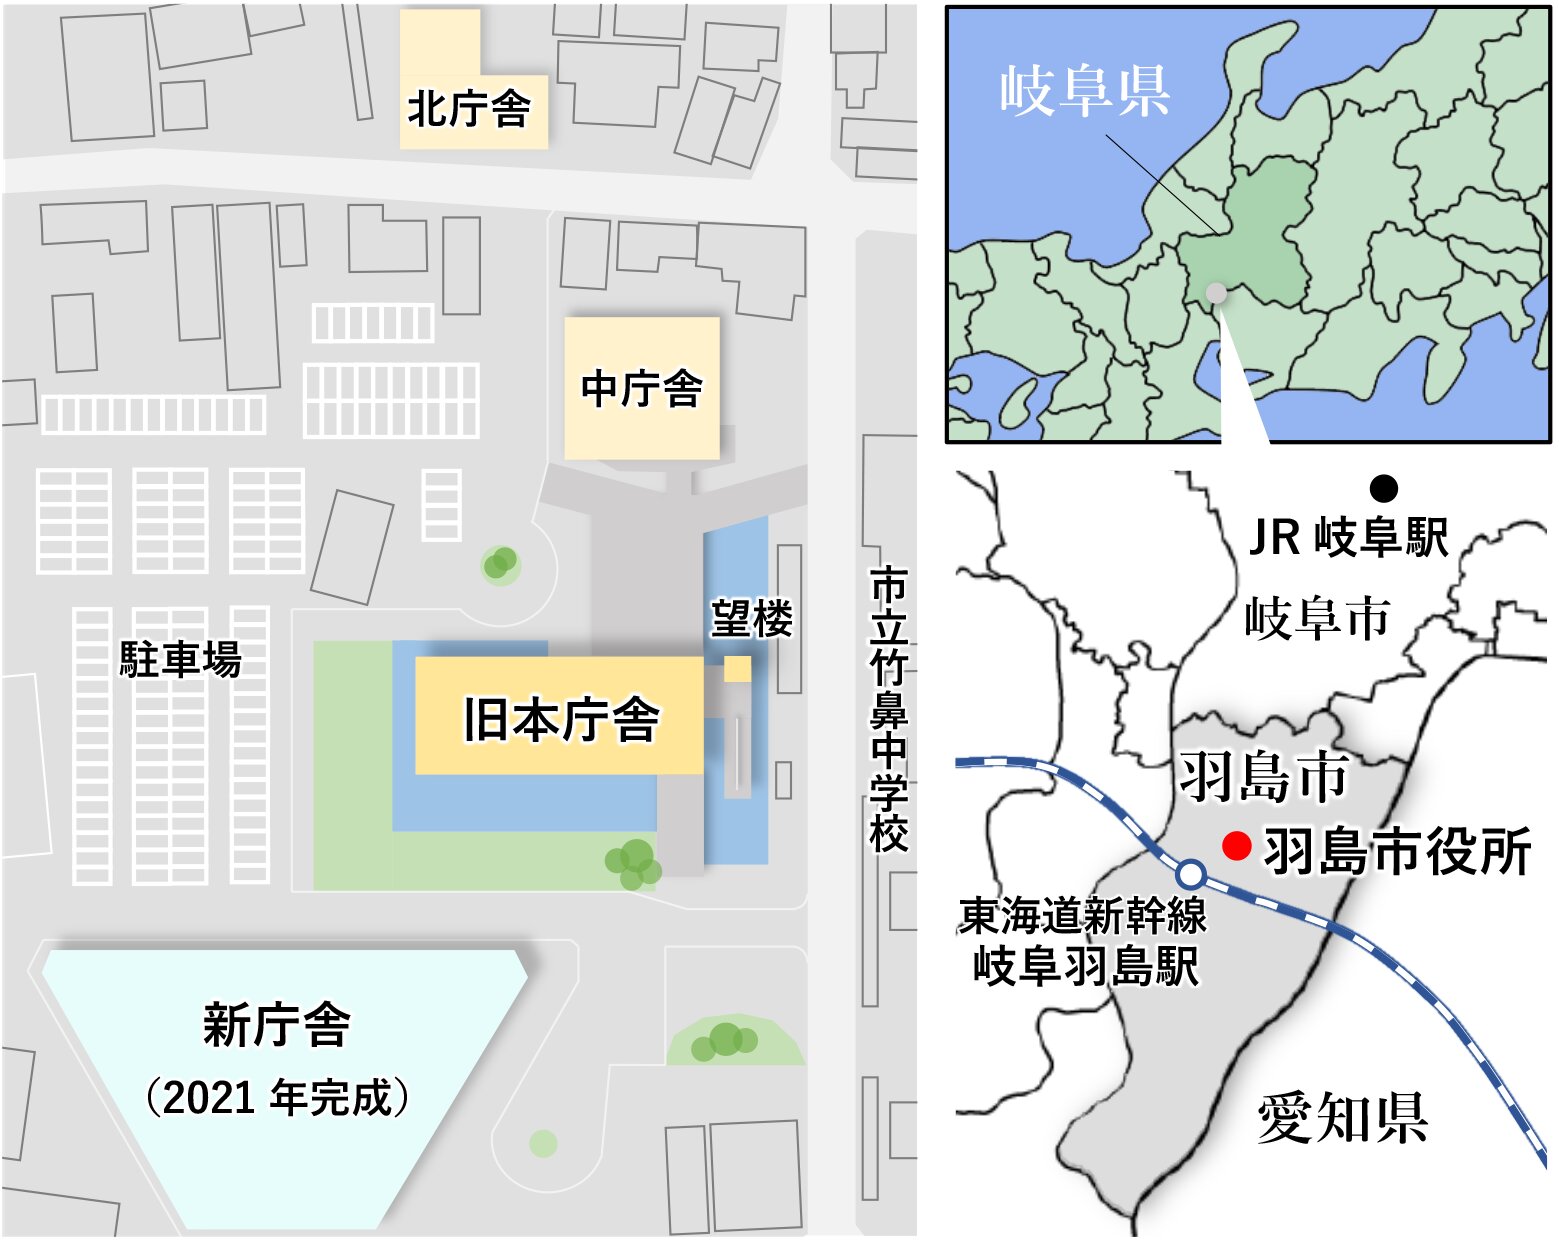 羽島市と市役所庁舎の関係を示す図（羽島市の資料などを基に筆者作成・再掲）